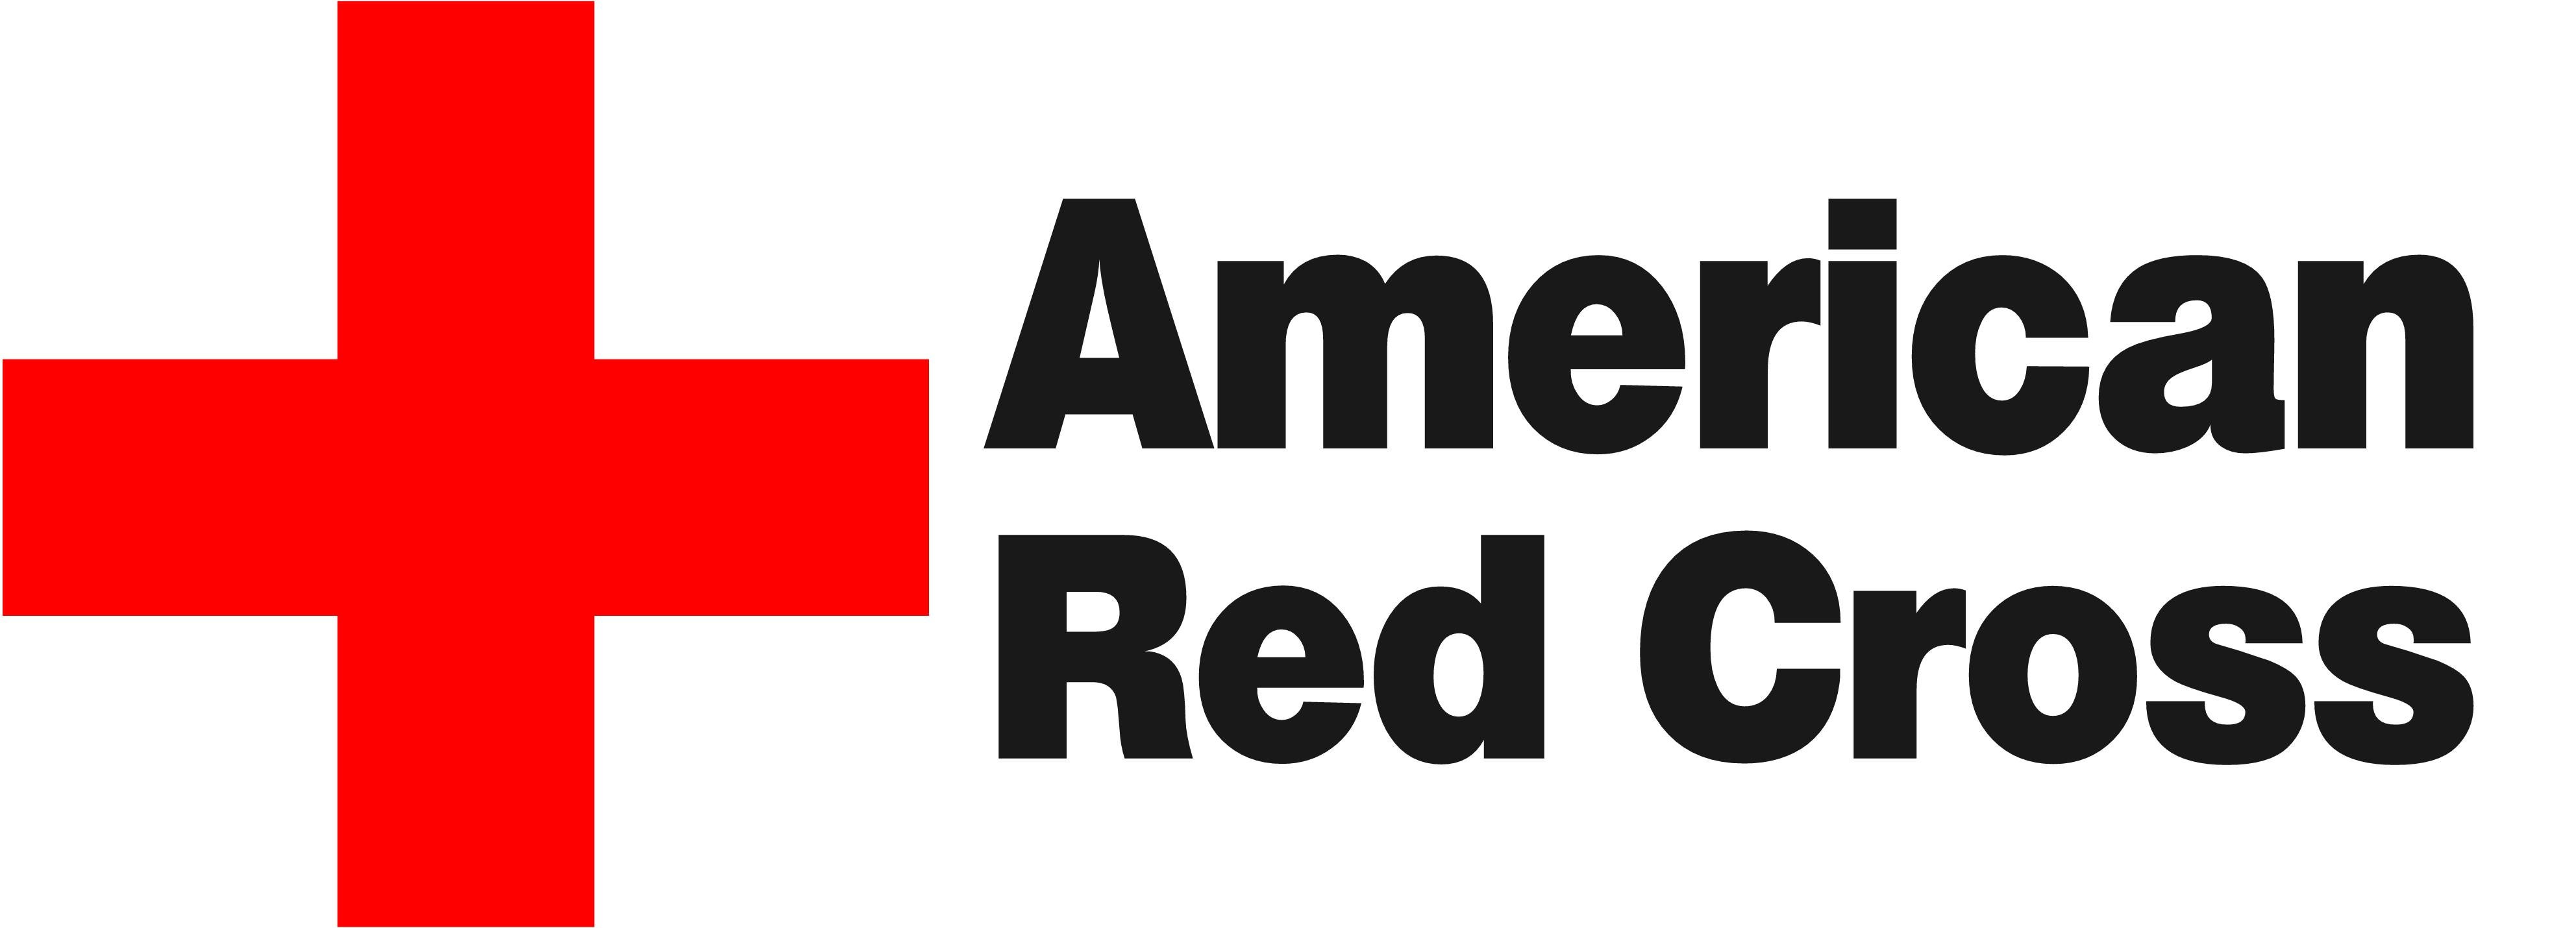 download american red cross smoke detectors